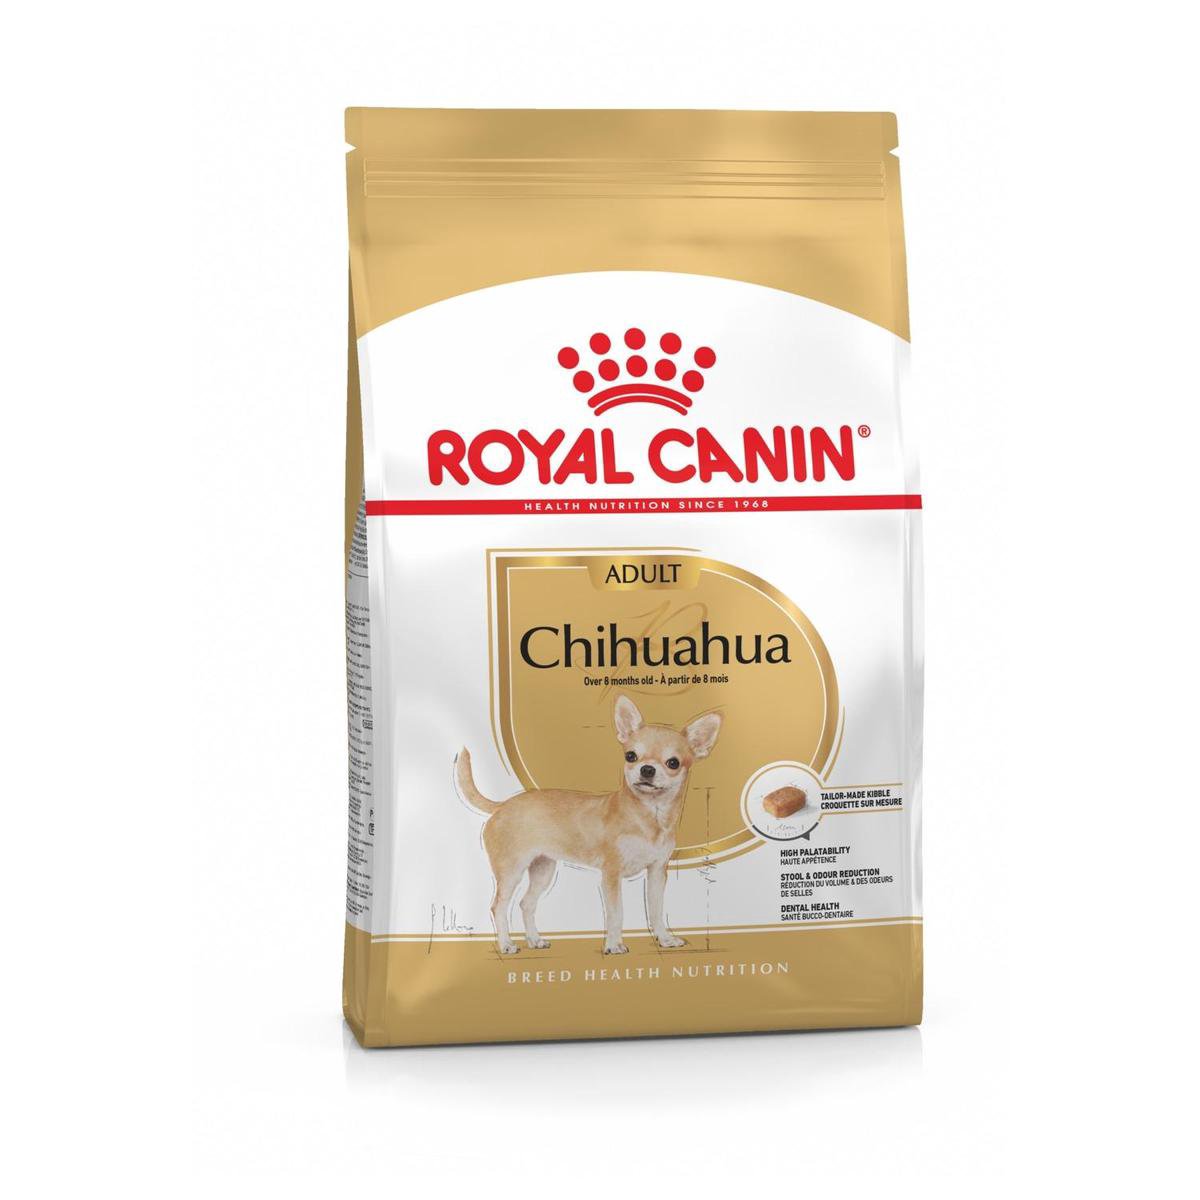 Royal canin chihuahua - 500 GR - Royal Canin